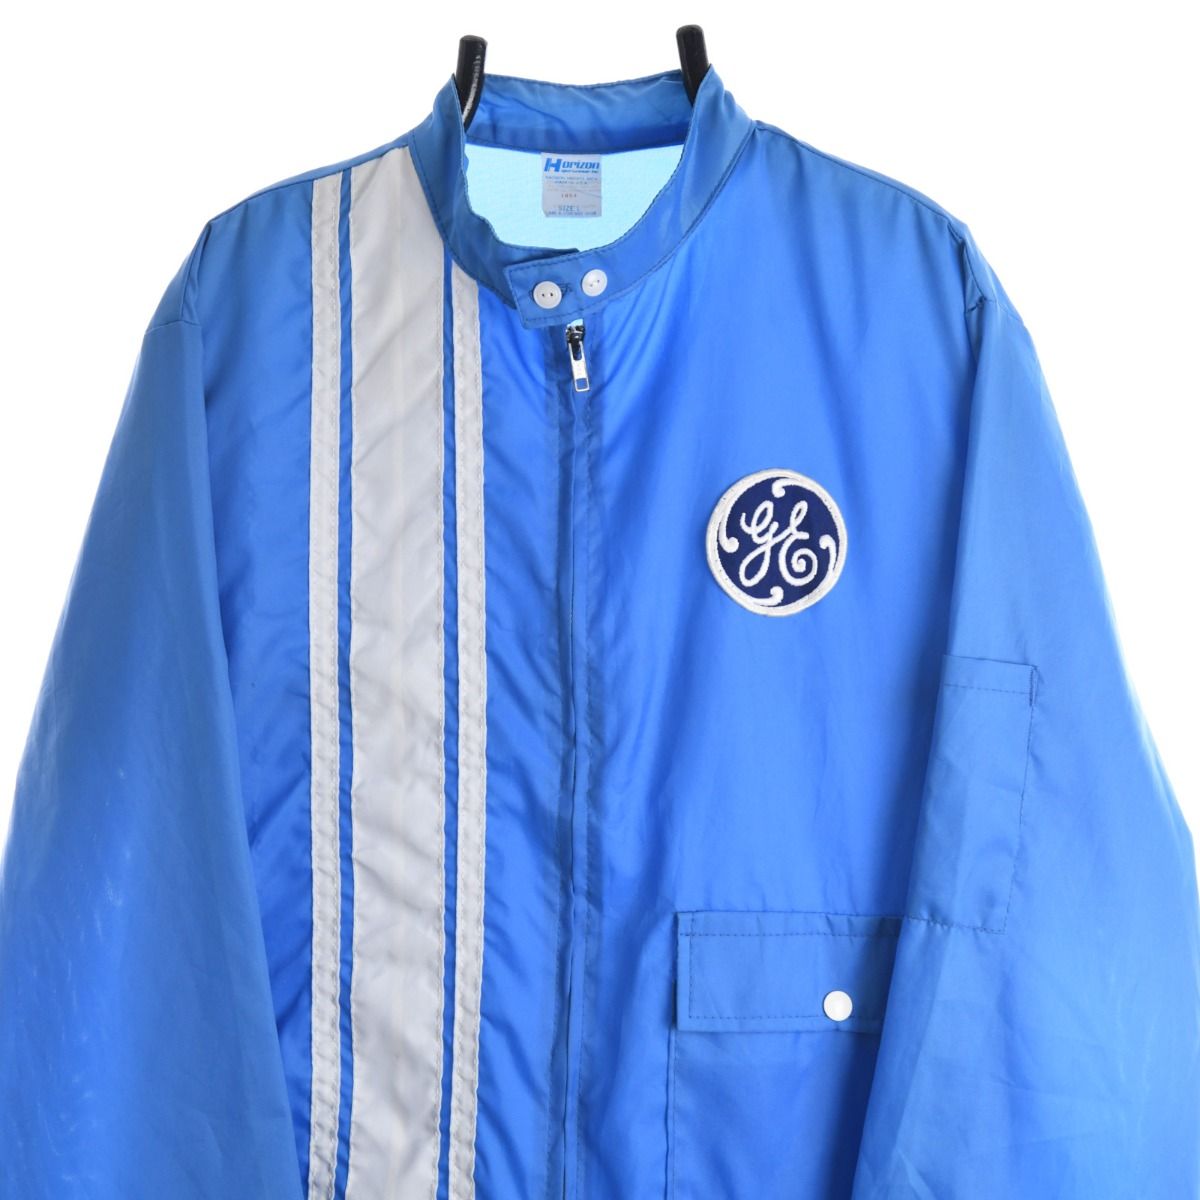 General Electric 1980s Lightweight Zip Up Jacket